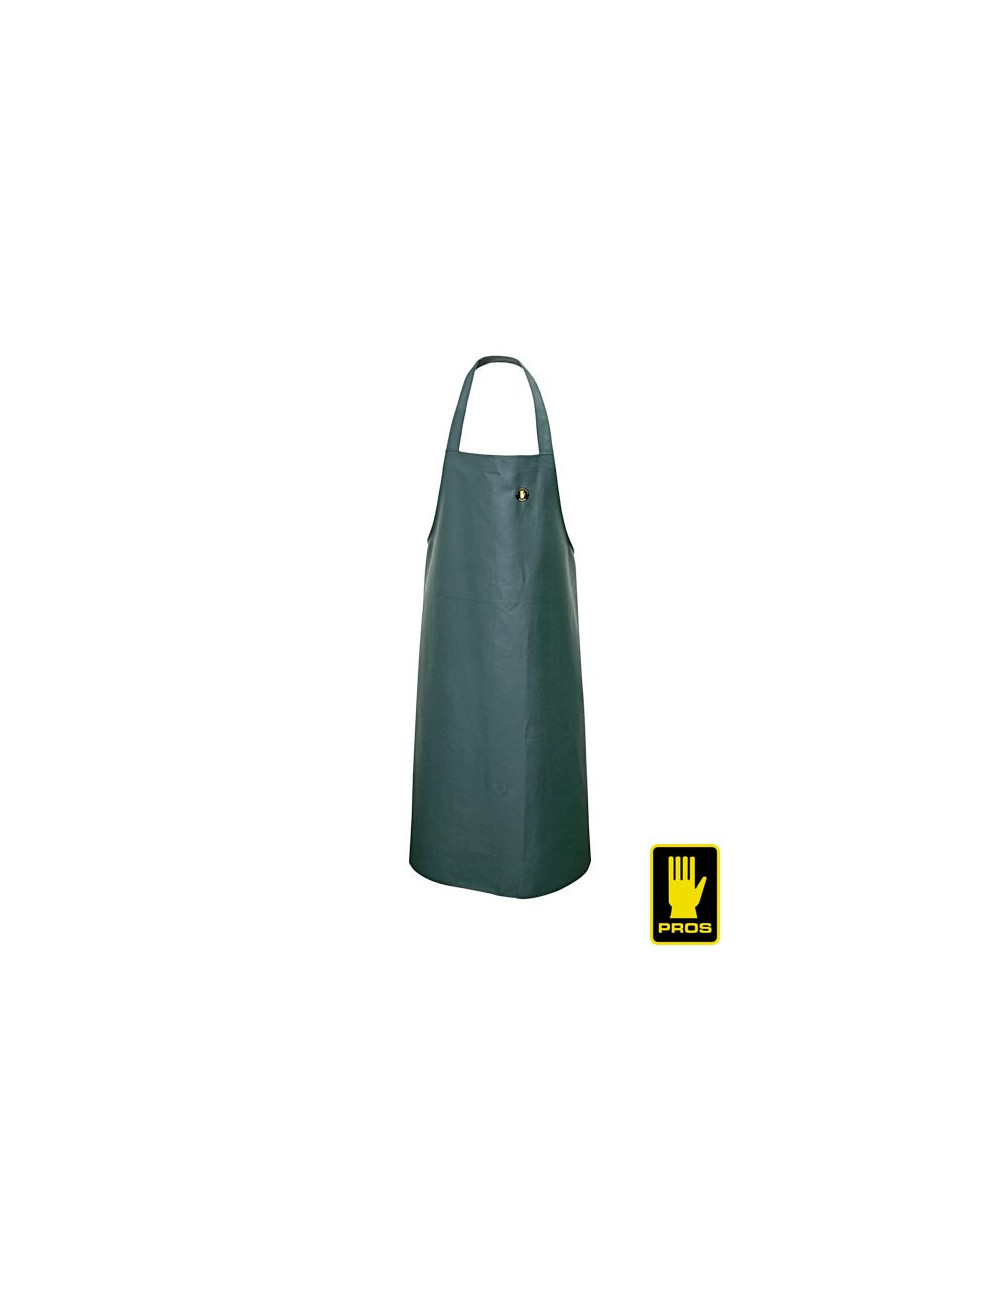 Waterproof oilproof apron aj-fwoil10 z green Pros